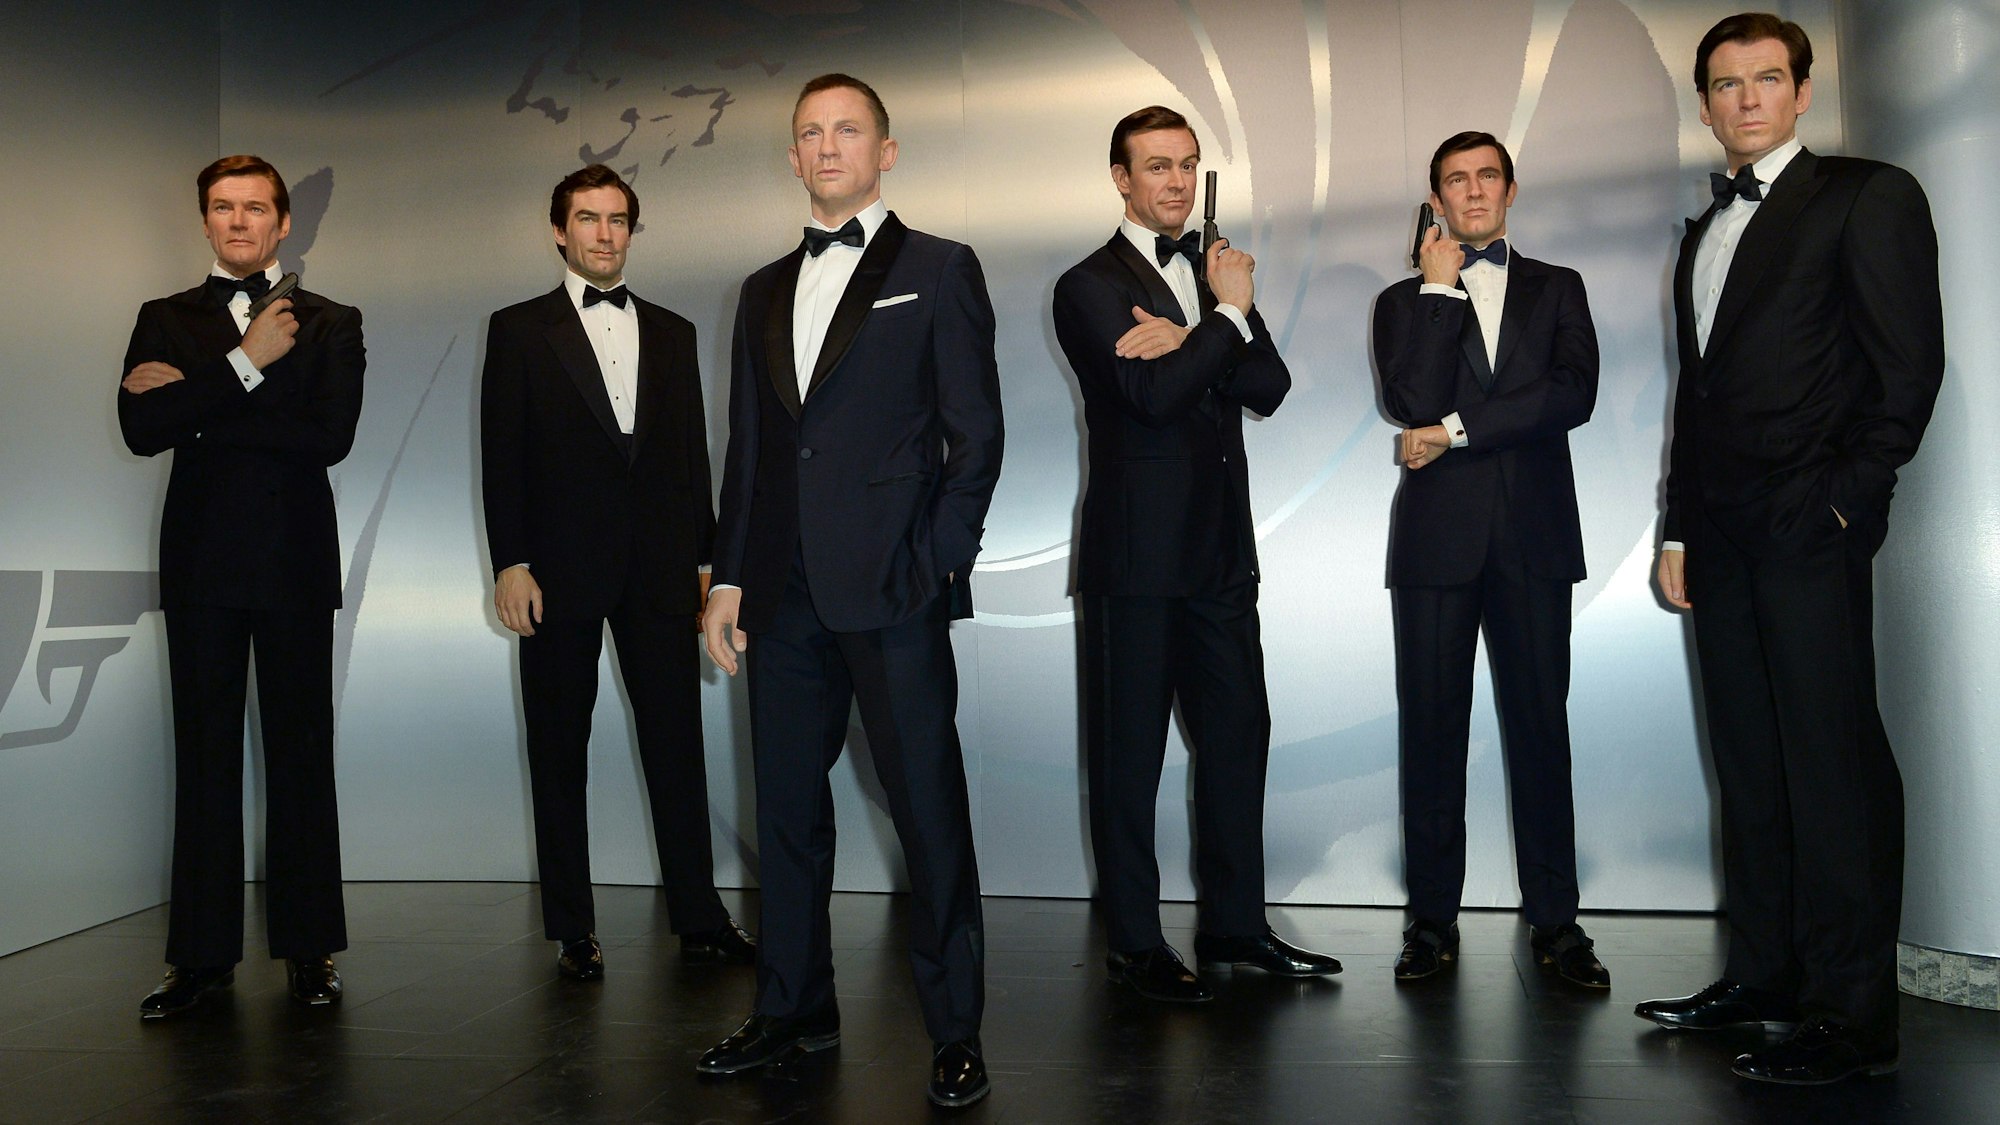 Die sechs Bond-Darsteller sind als Wachsfiguren ausgestellt. Jede Figur trägt einen schwarzen Anzug, ein weißes Hemd und eine schwarze Fliege. Drei Figuren halten zusätzlich noch eine Pistole in der Hand.